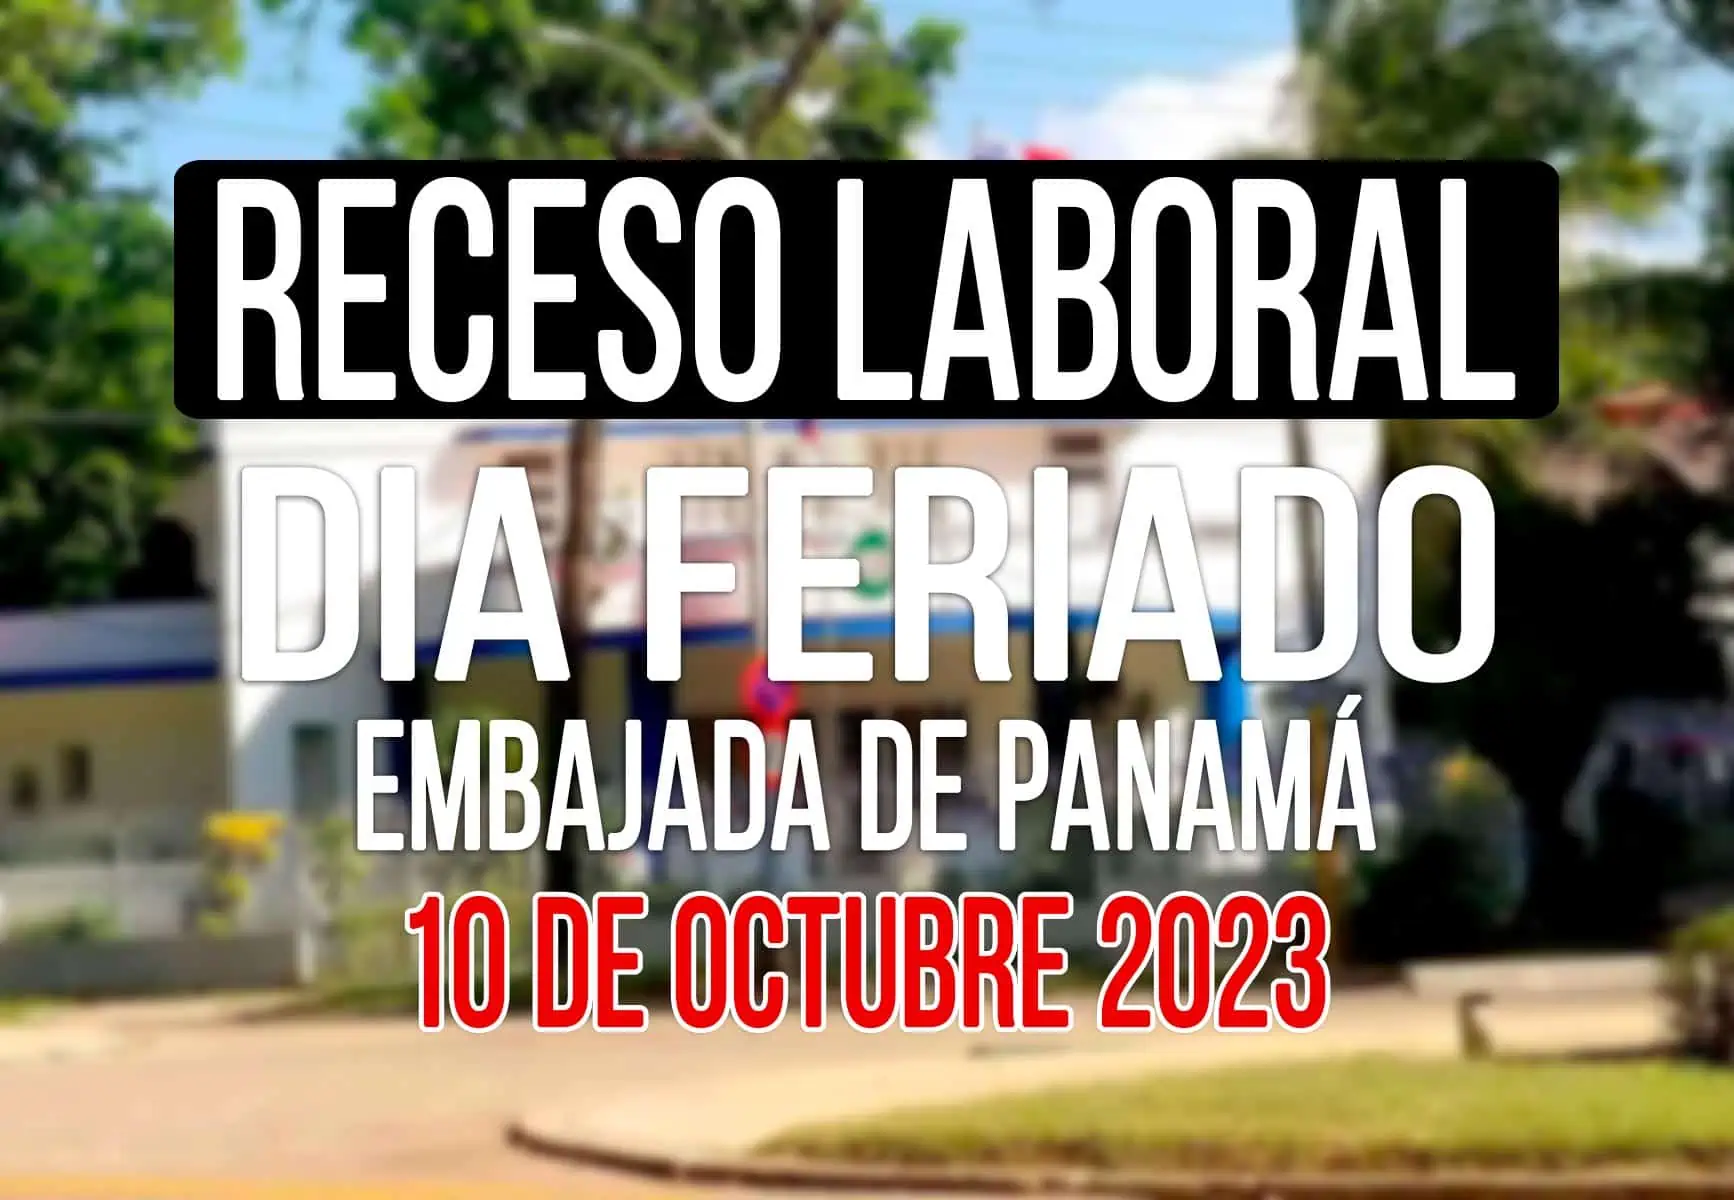 Consulado de Panamá en Cuba Anuncia Cierre por Receso Laboral